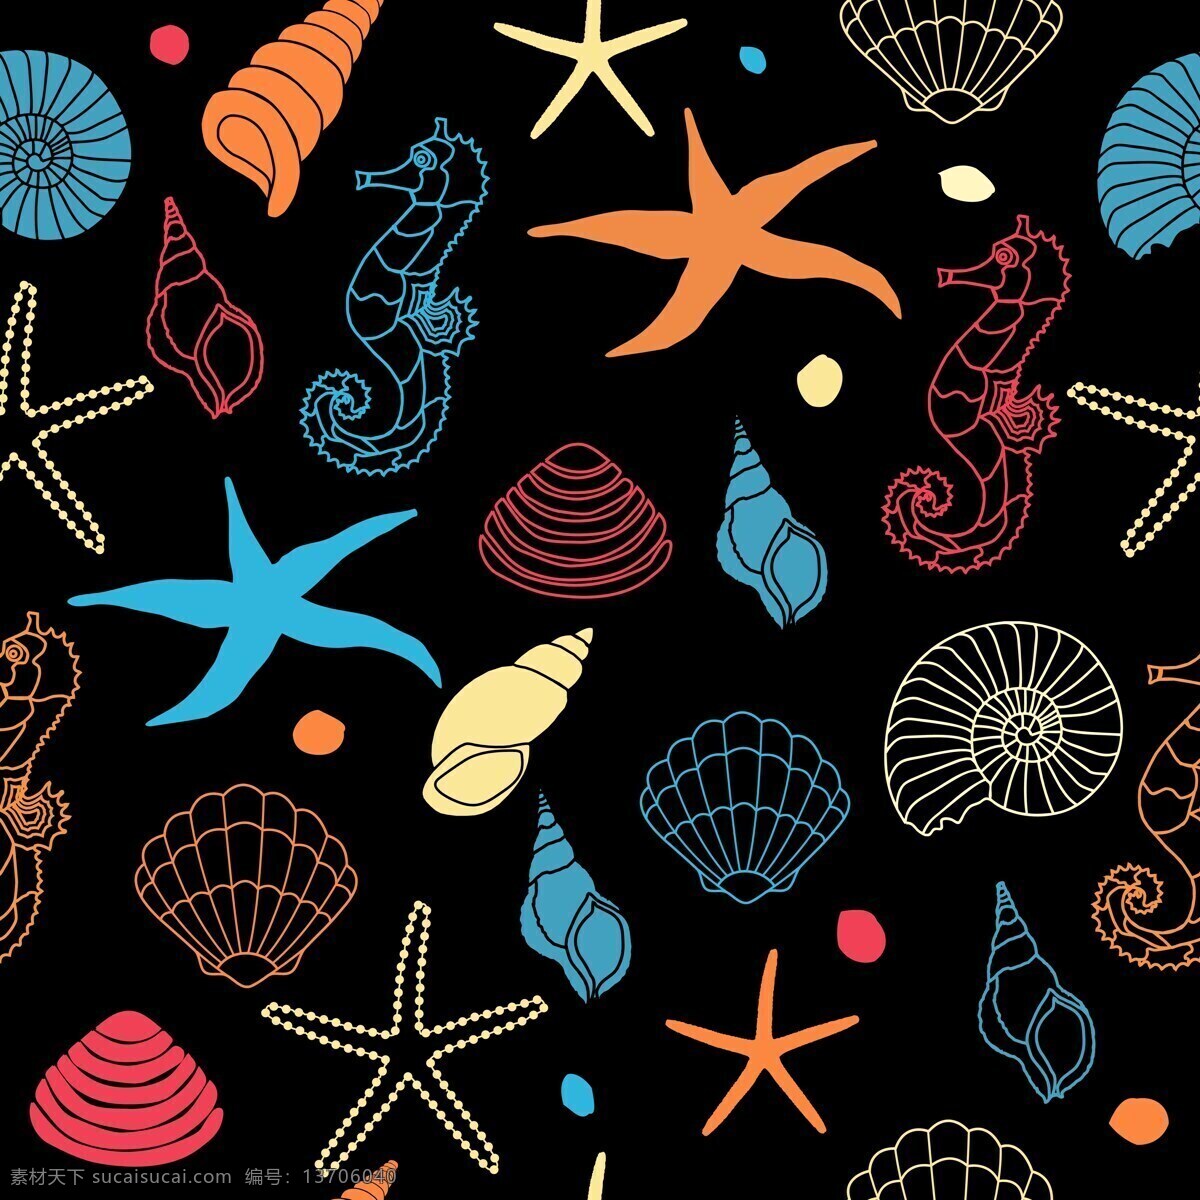 海洋背景 背景 海星 海螺 海洋生物 星星 海星背景 生物背景 底纹边框 背景底纹